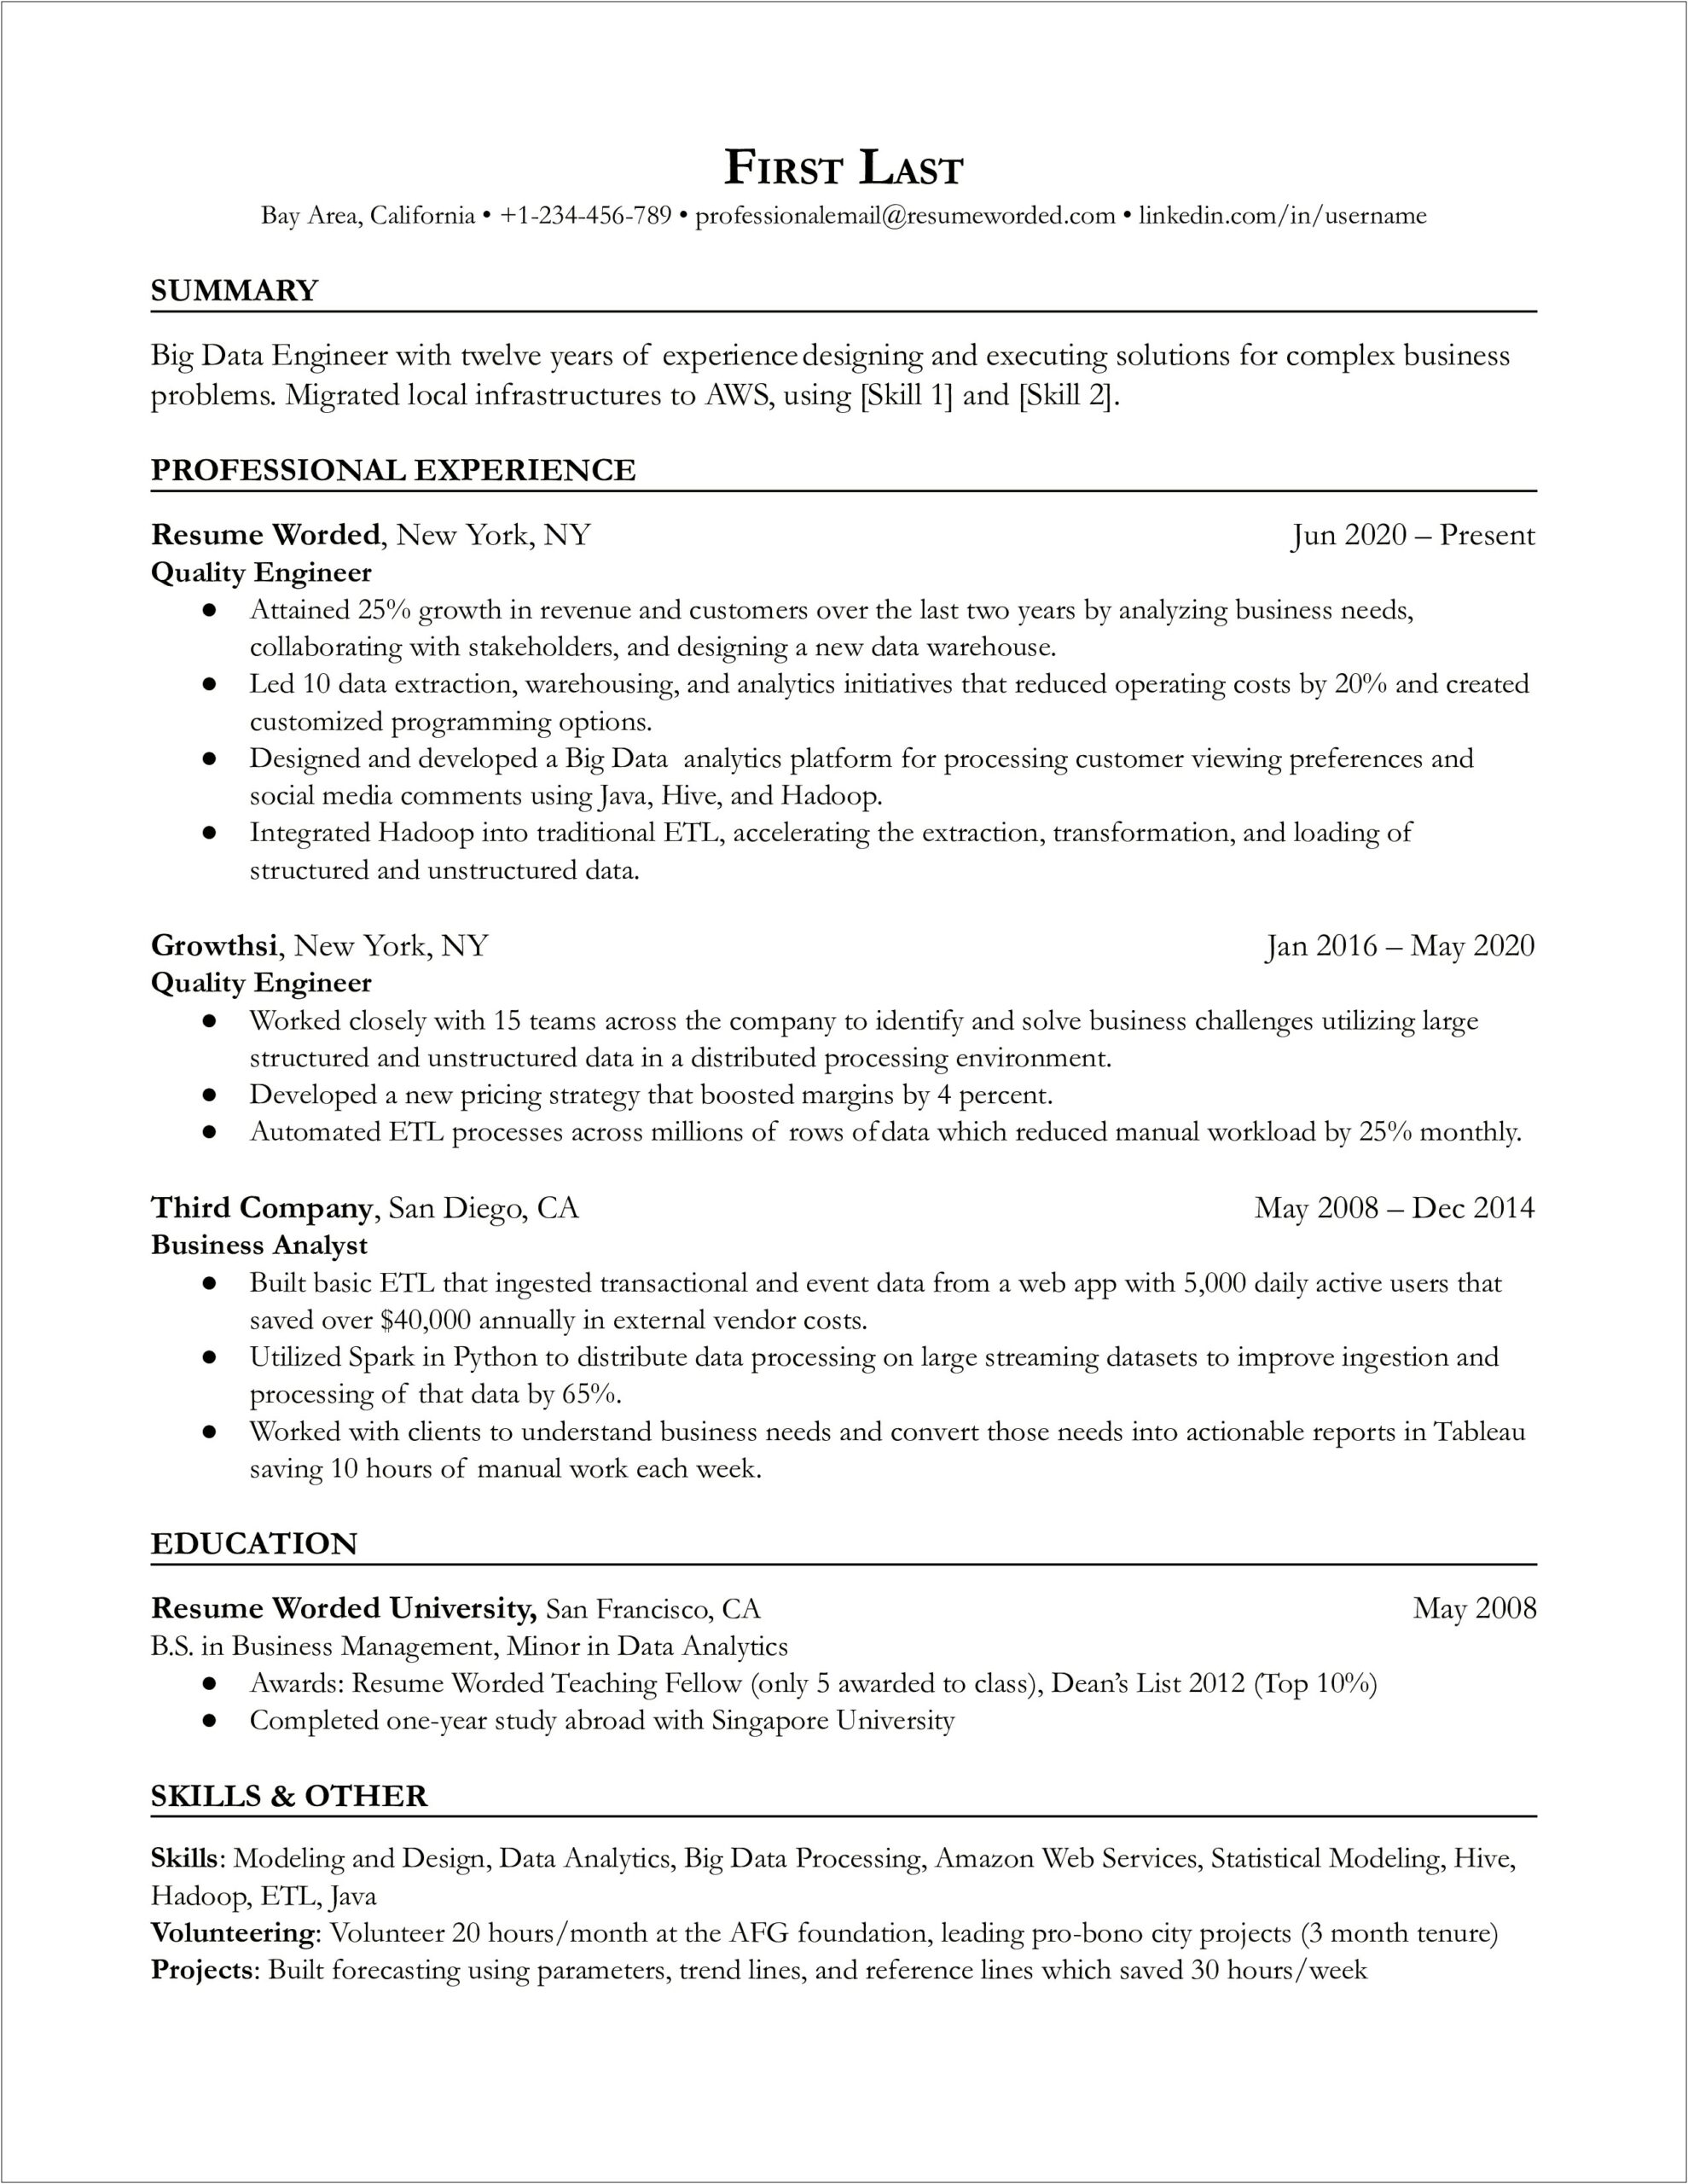 Environmental Services Job Description For Resume